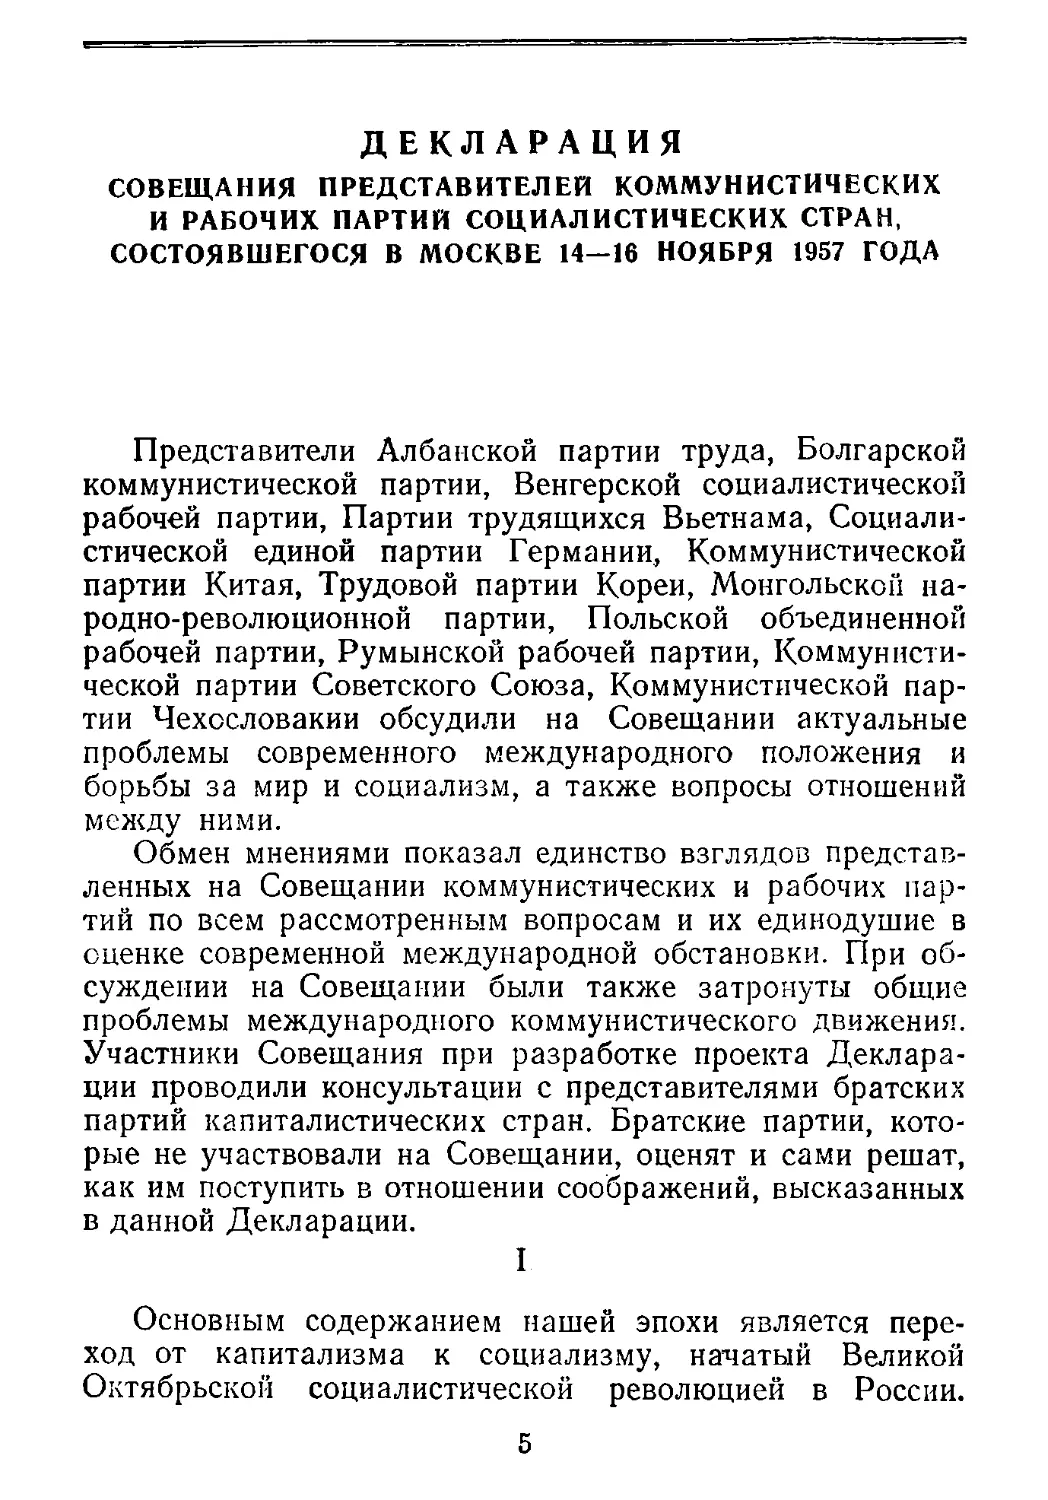 Декларация совещания представителей коммунистических и рабочих партий социалистических стран, состоявшегося в Москве 14—16 ноября 1957 года